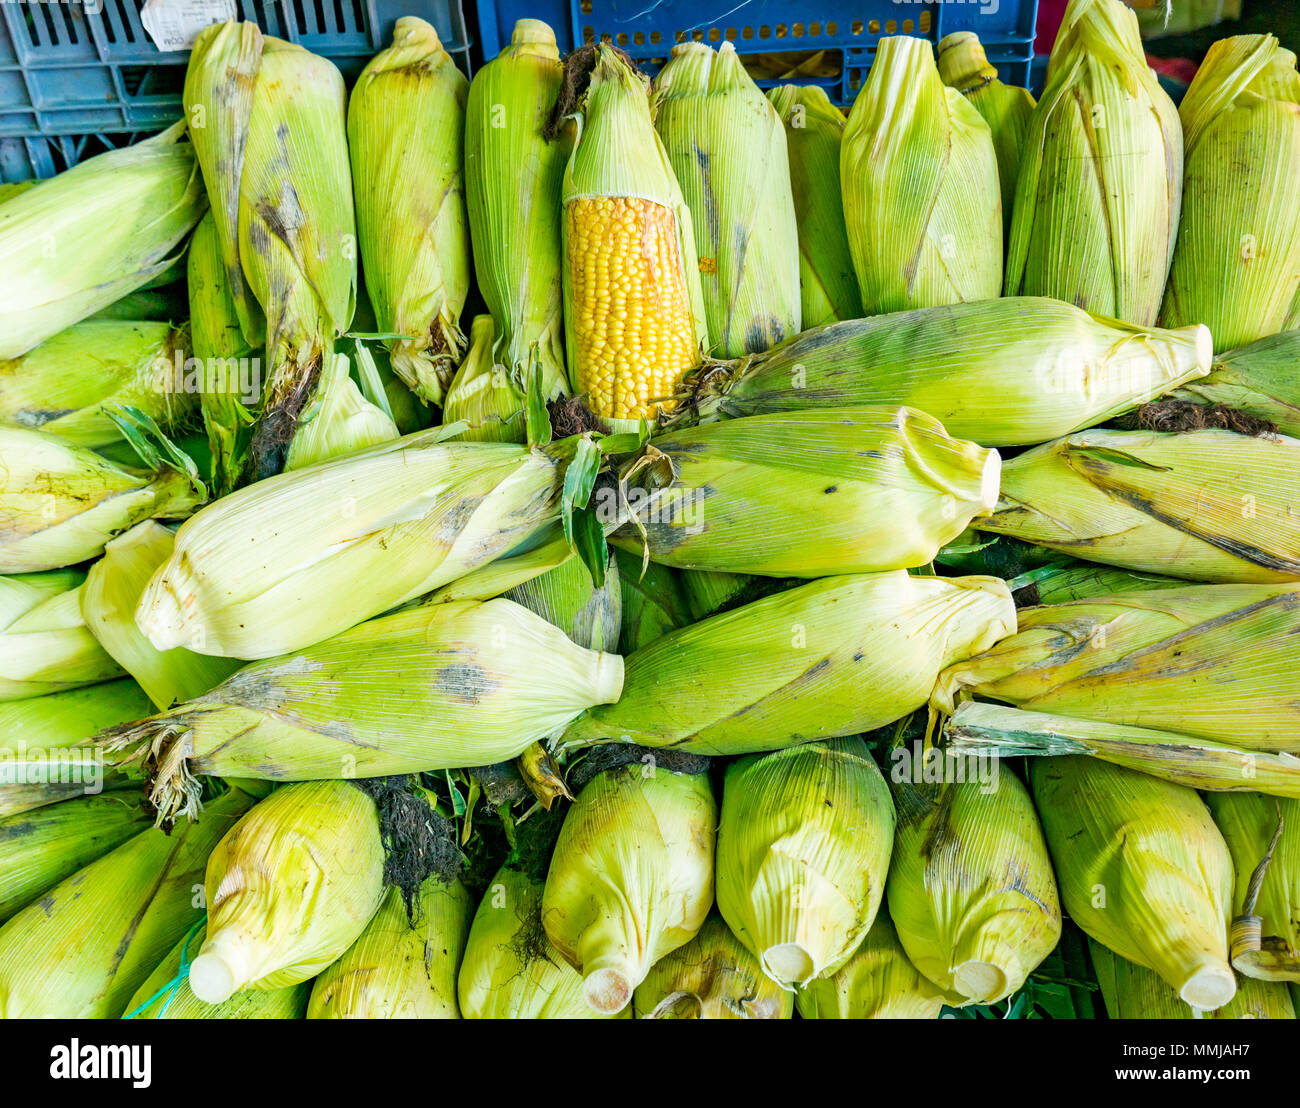 Anzeige von Maiskolben, Patronata Obst- und Gemüsemarkt, Santiago, Chile Stockfoto